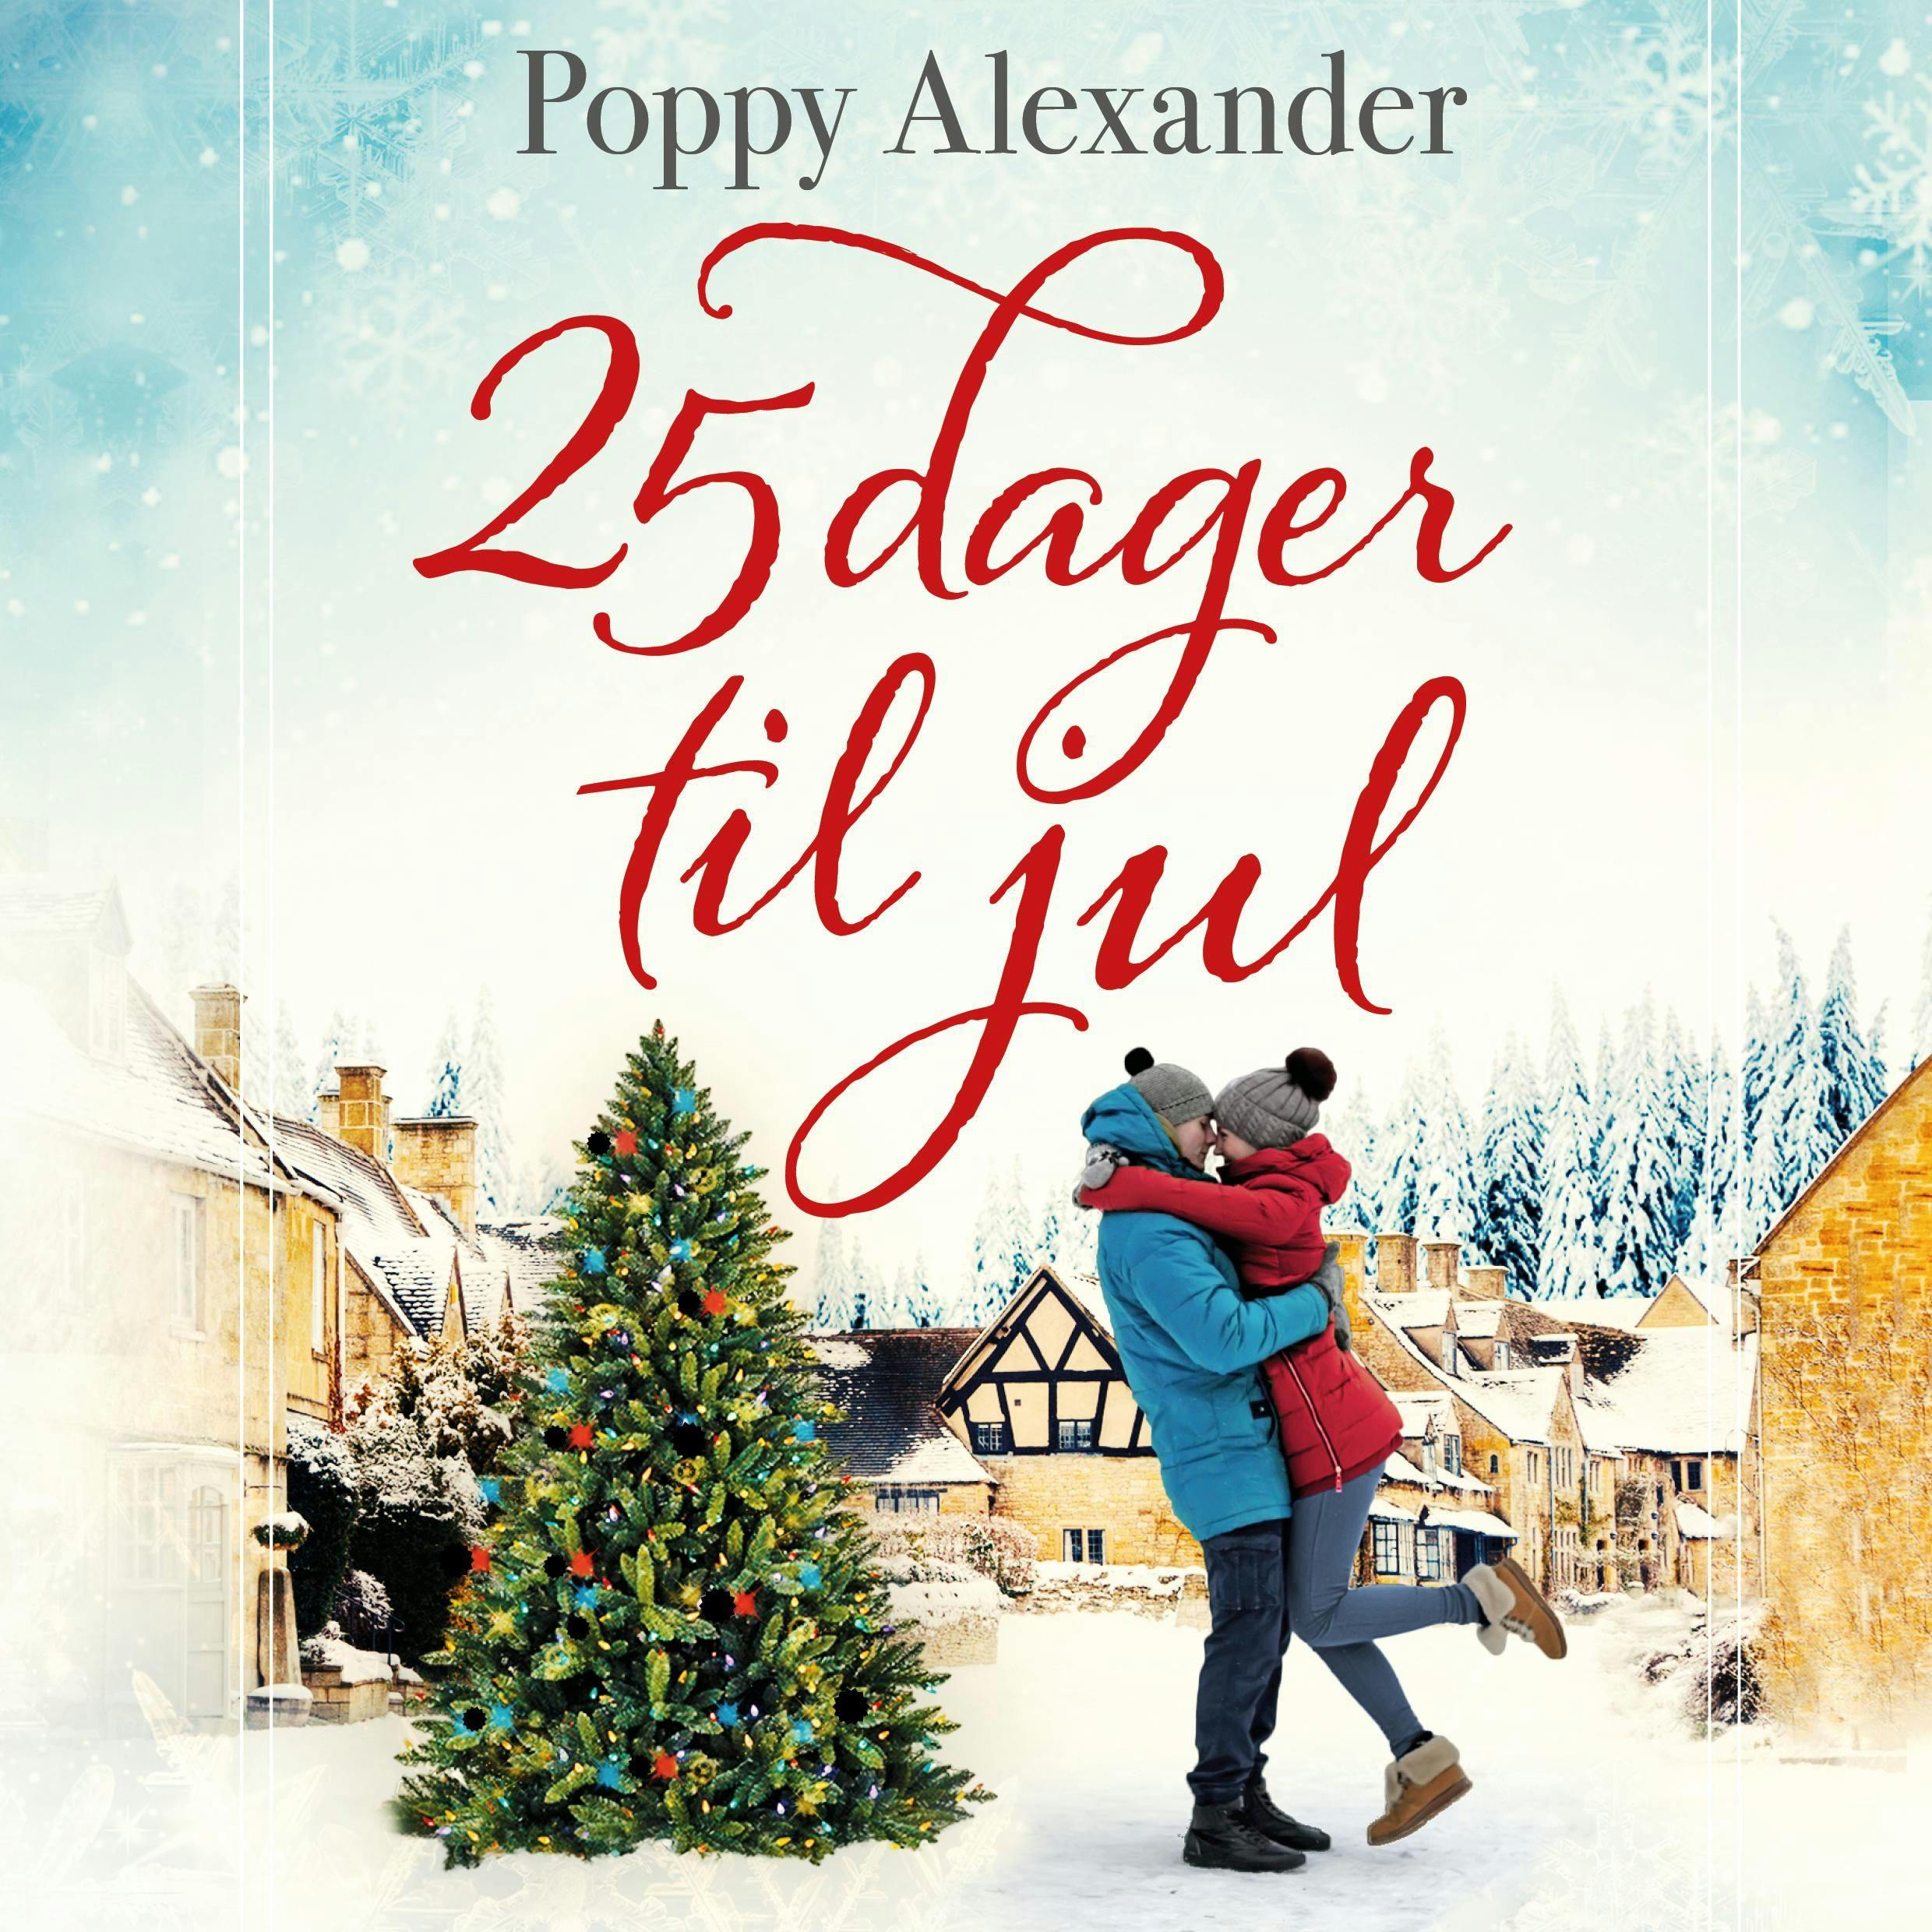 25 dager til jul - Poppy Alexander